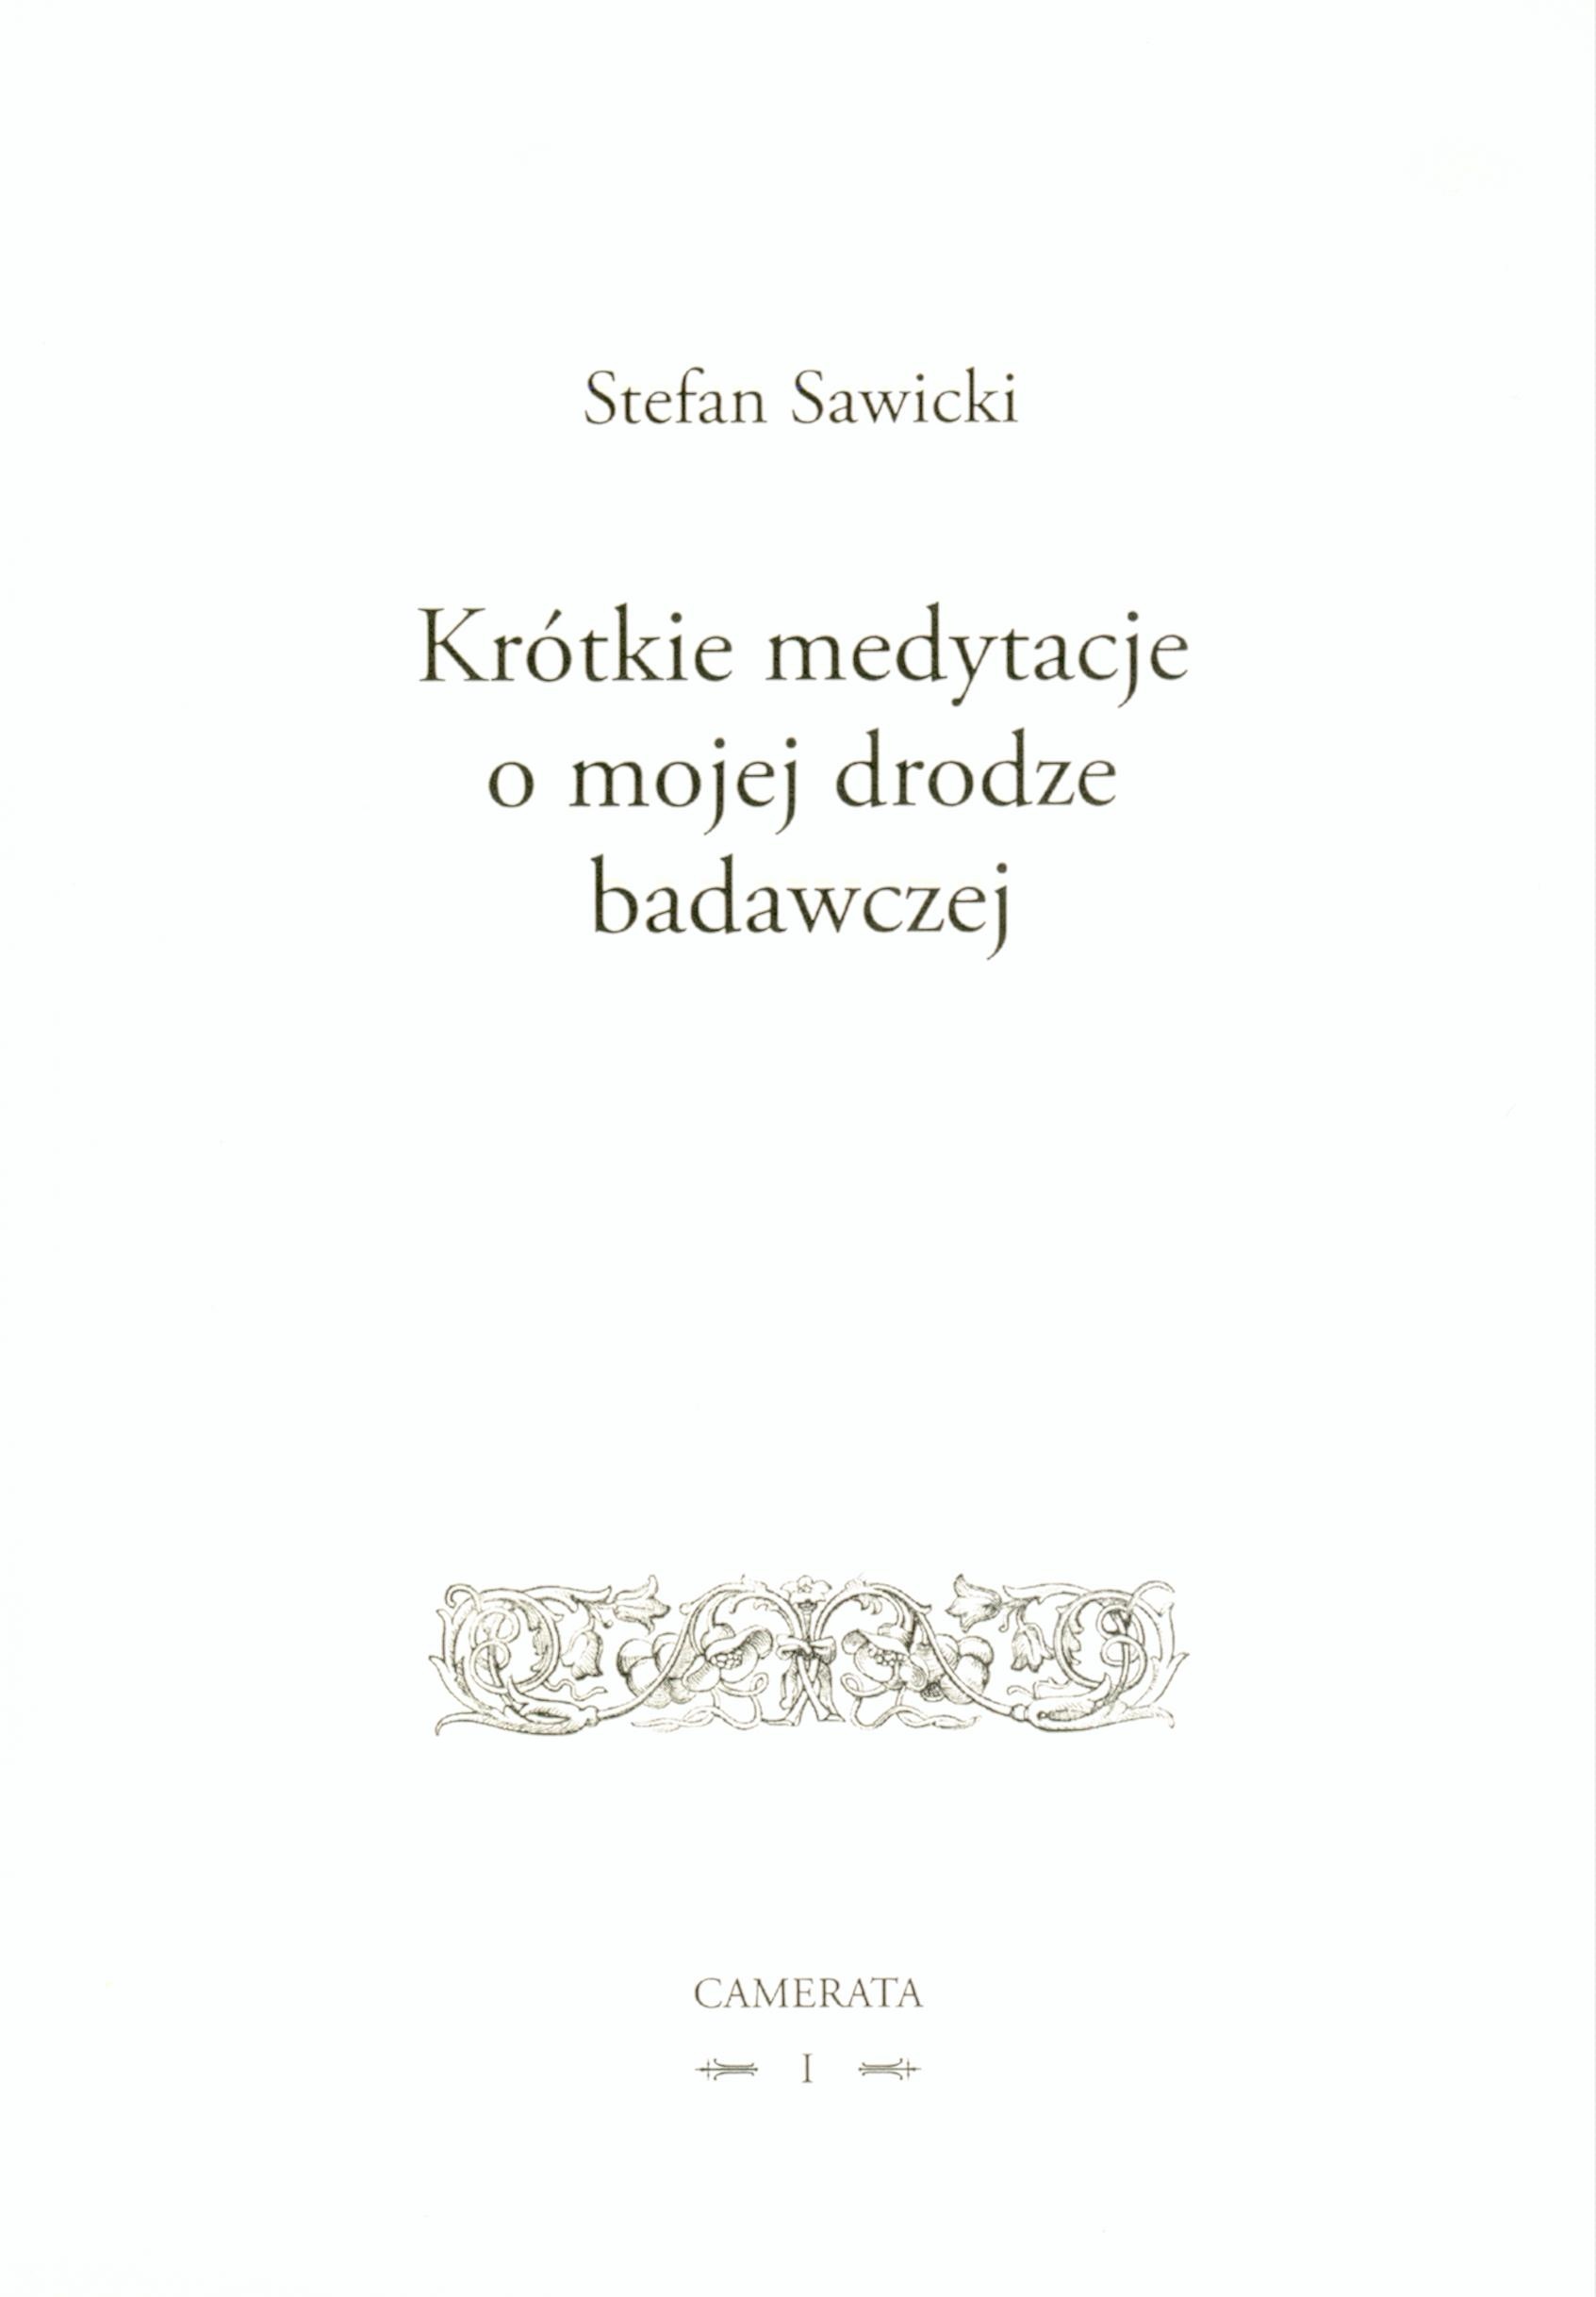 sawicki_2436